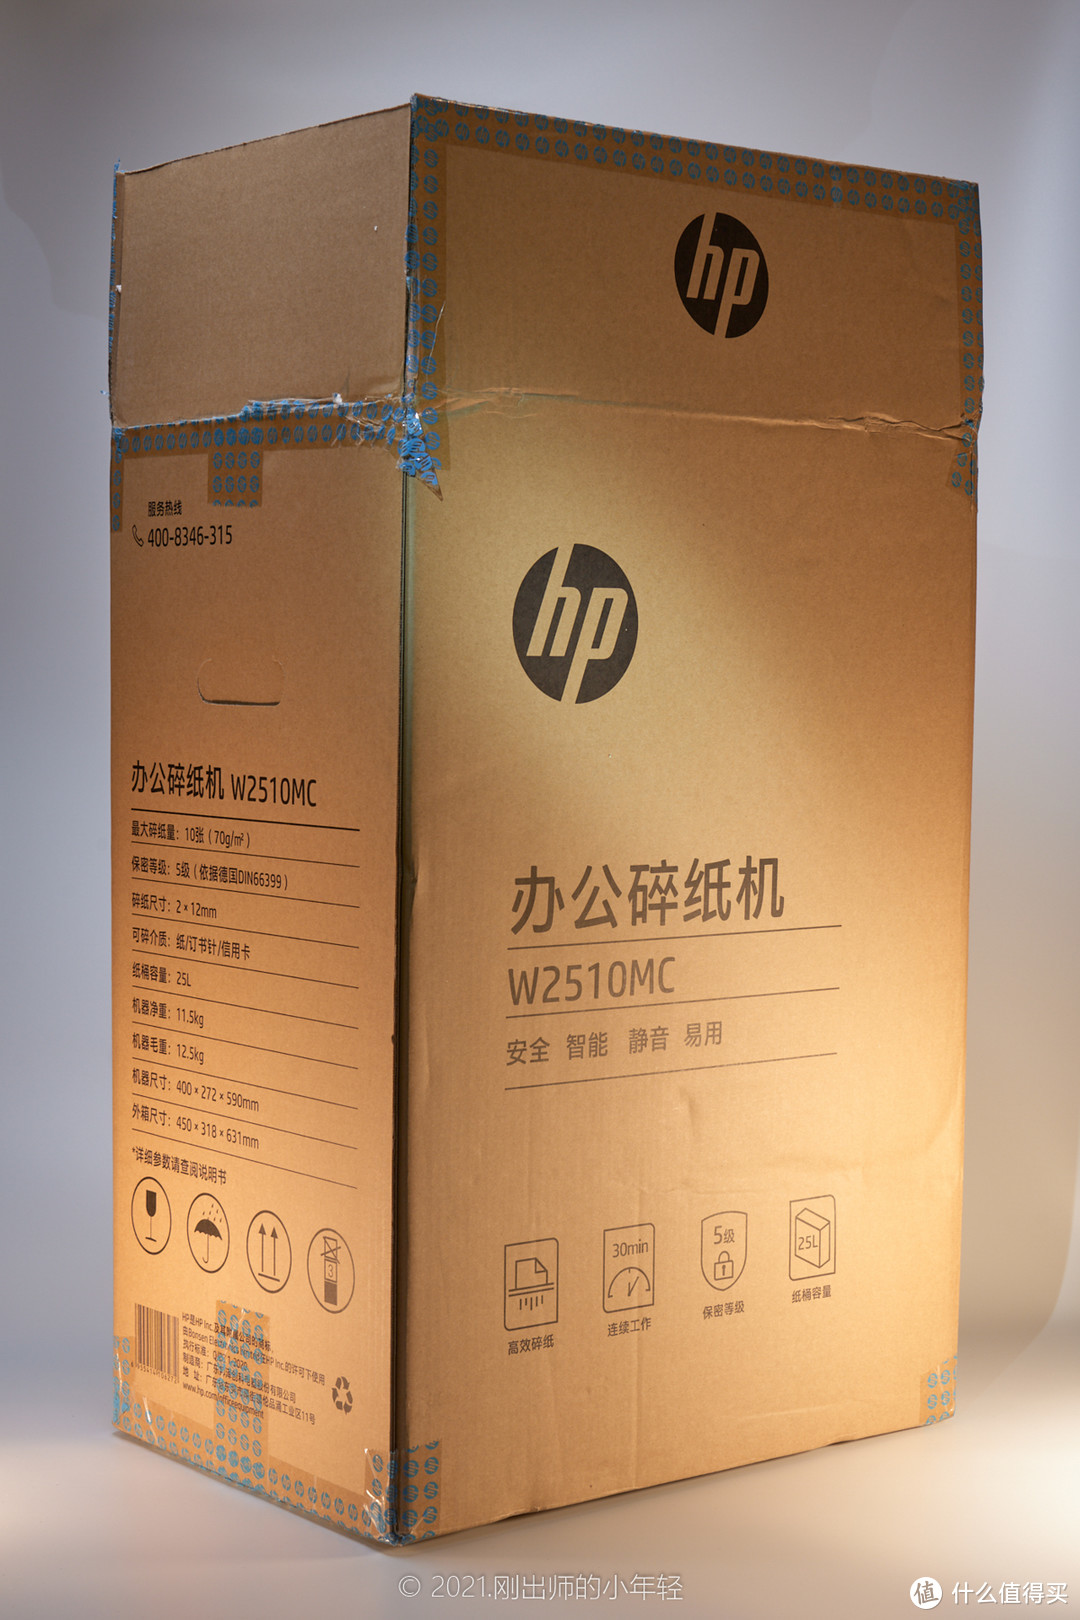 入手了新玩具——HP W2510MC办公碎纸机